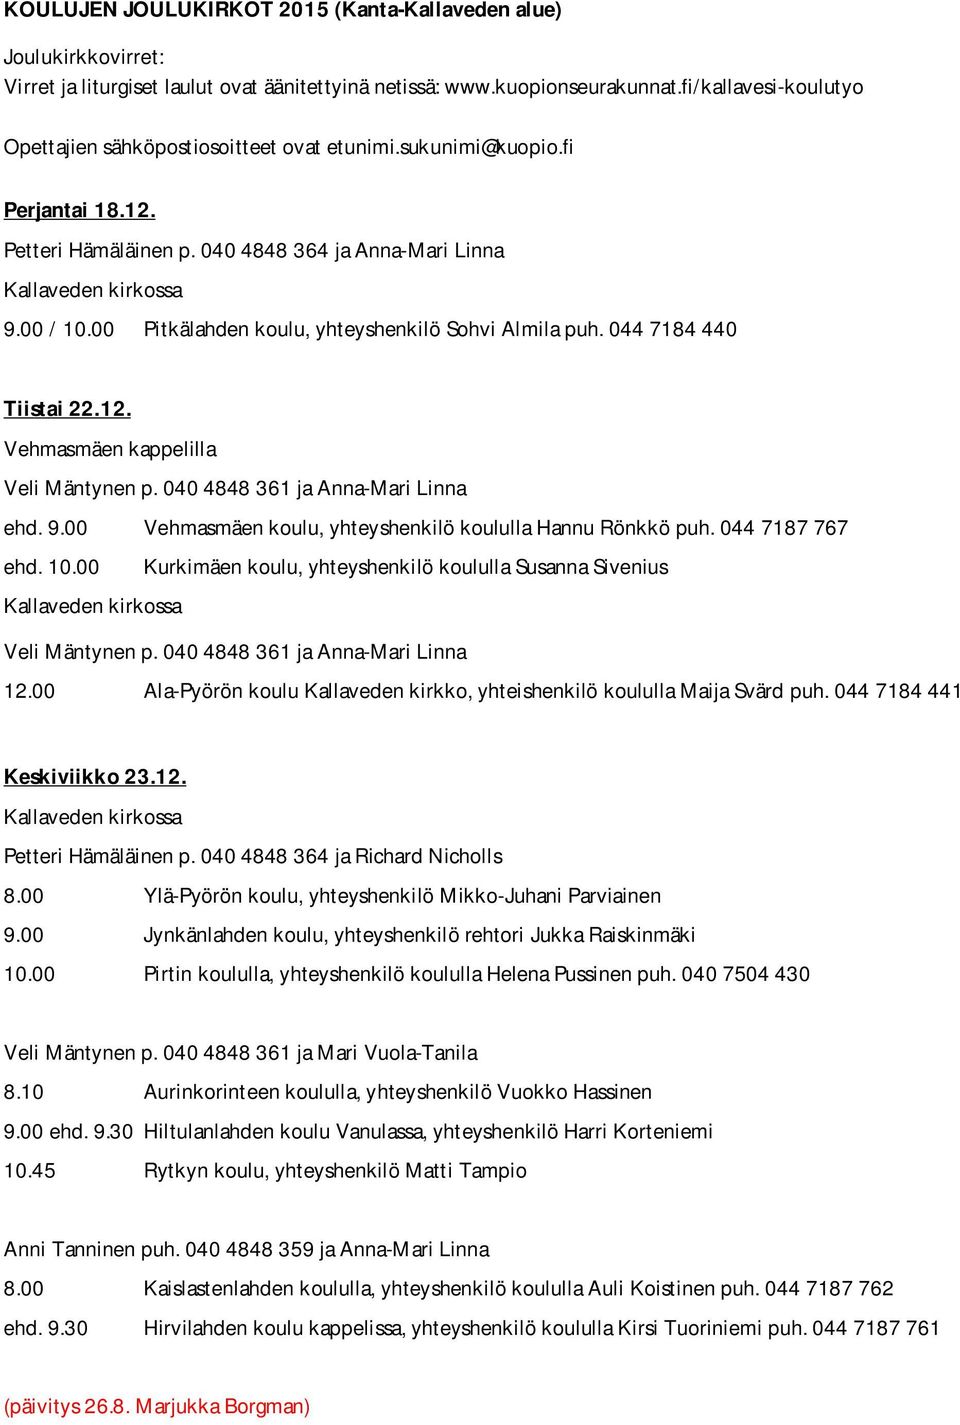 00 Pitkälahden koulu, yhteyshenkilö Sohvi Almila puh. 044 7184 440 Tiistai 22.12. Vehmasmäen kappelilla Veli Mäntynen p. 040 4848 361 ja Anna-Mari Linna ehd. 9.